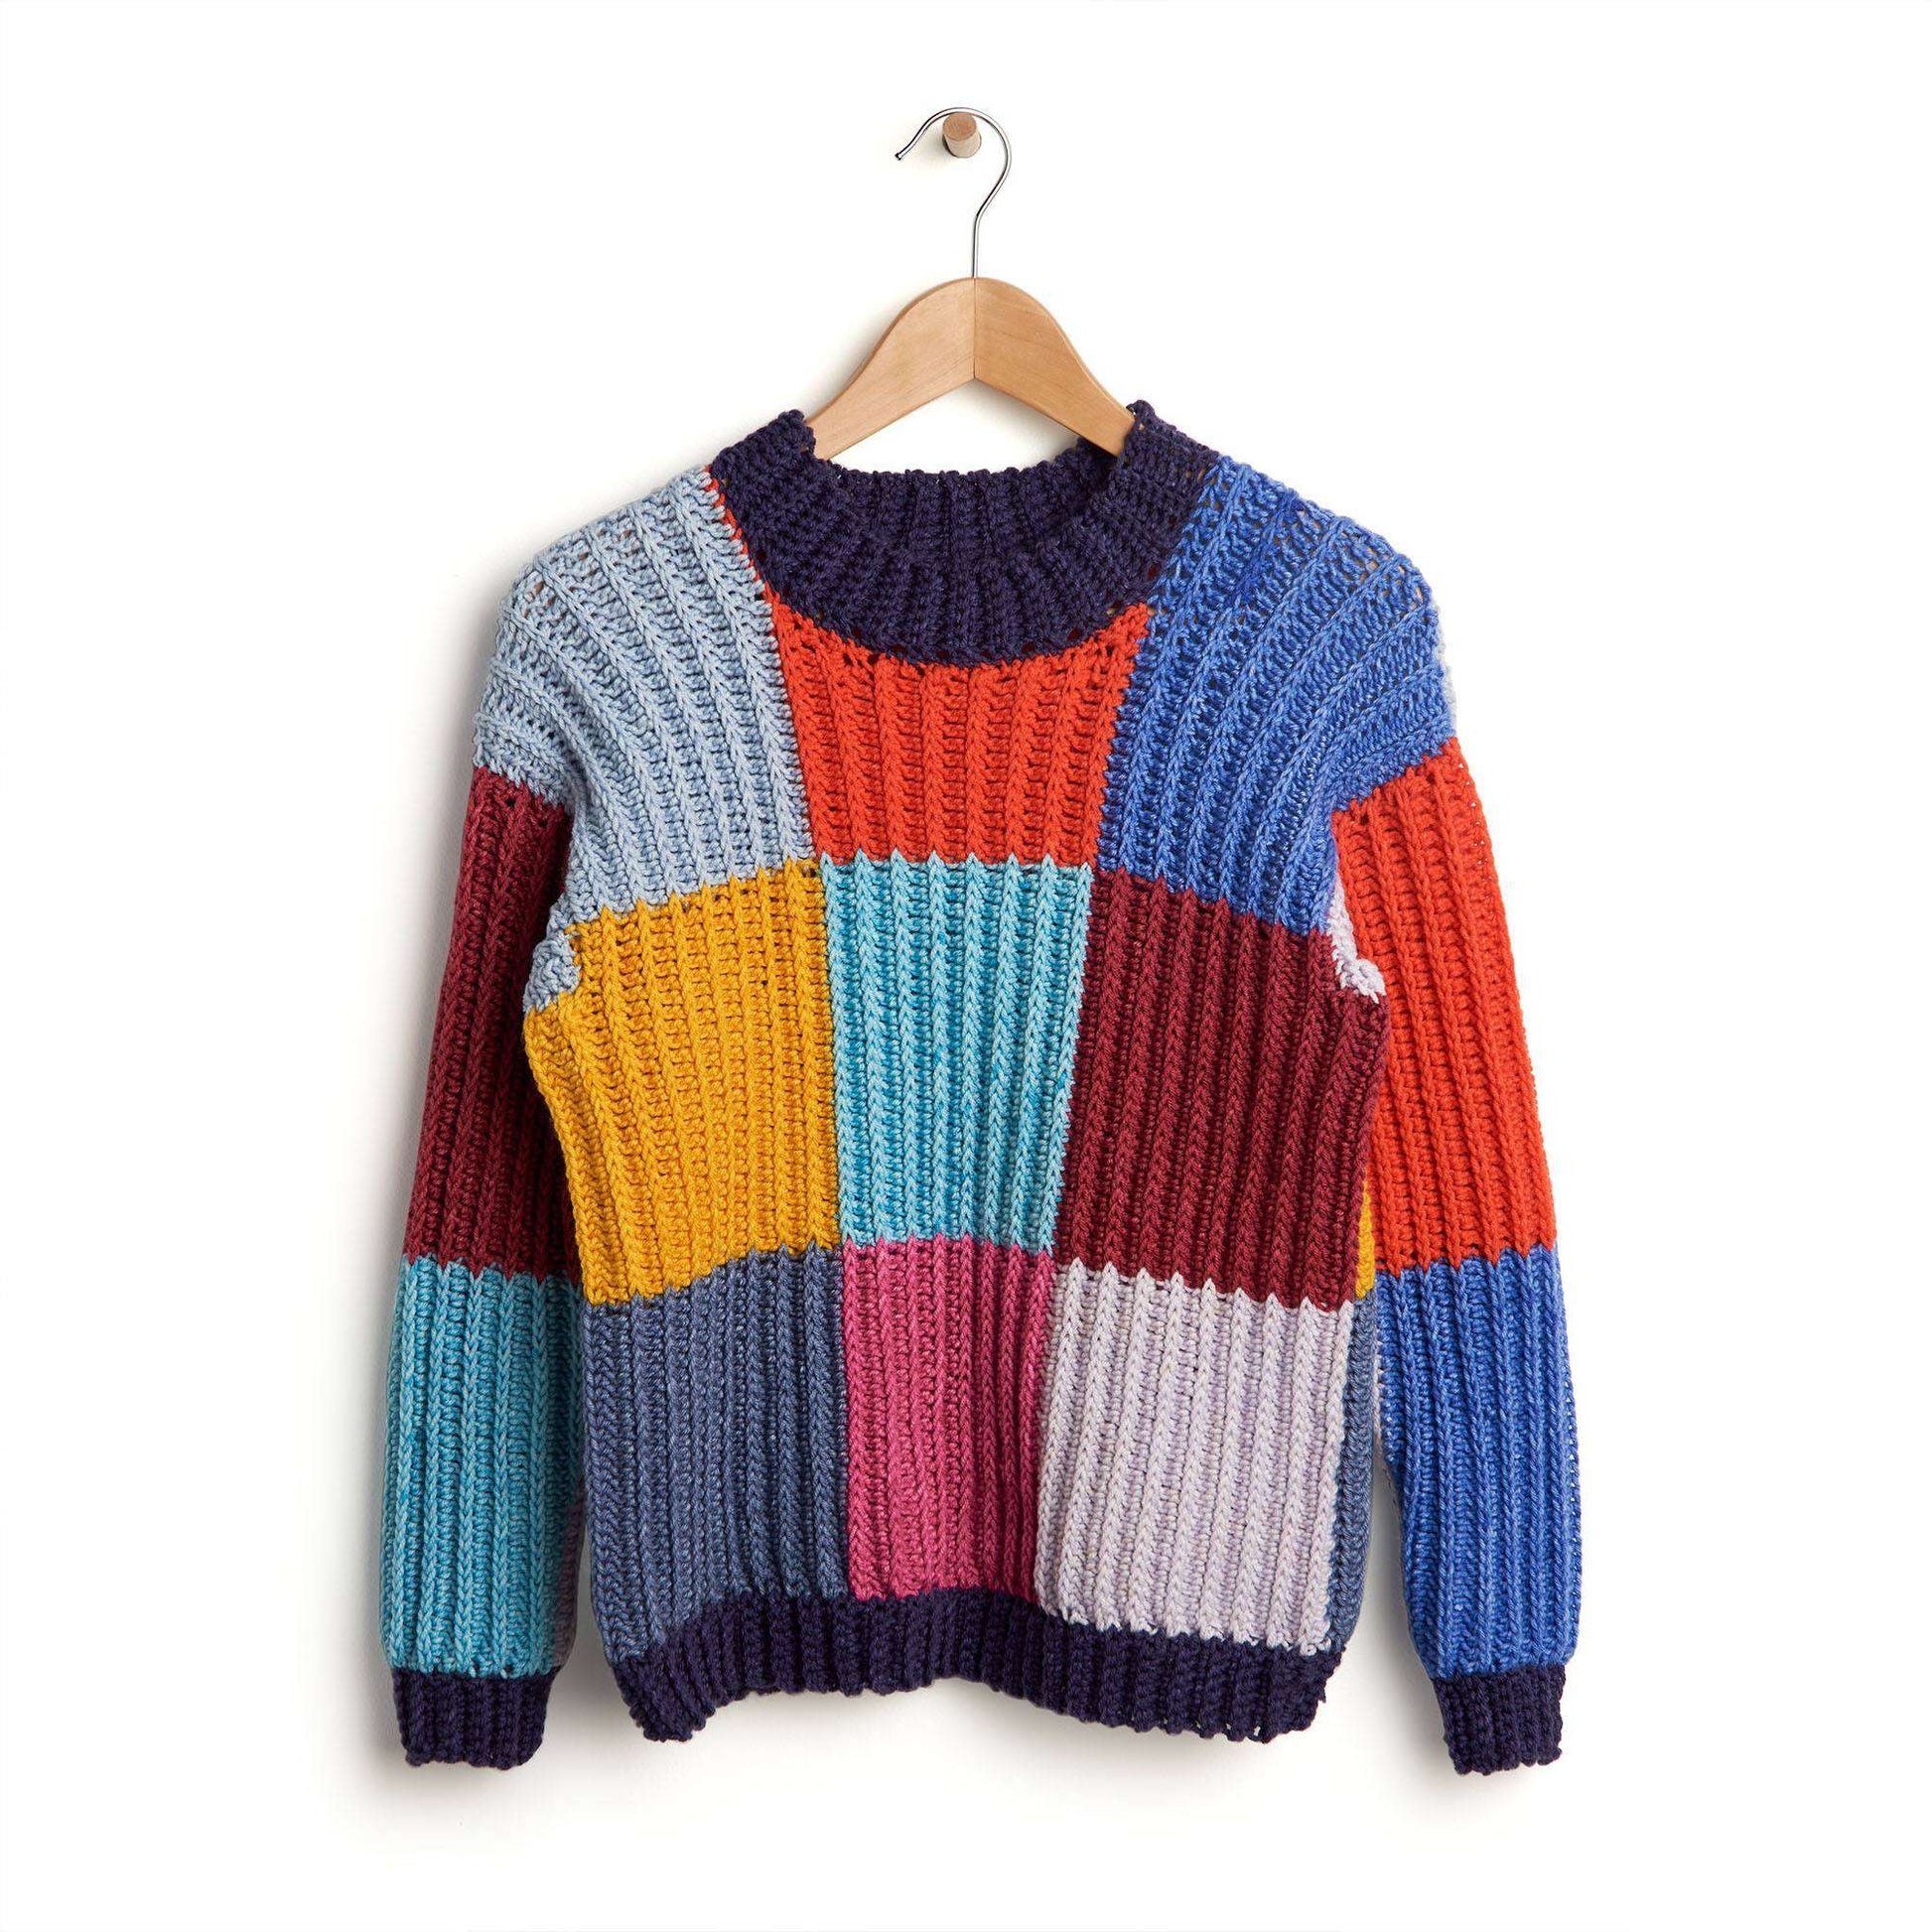 Free Caron Boxy Checks Crochet Sweater Pattern